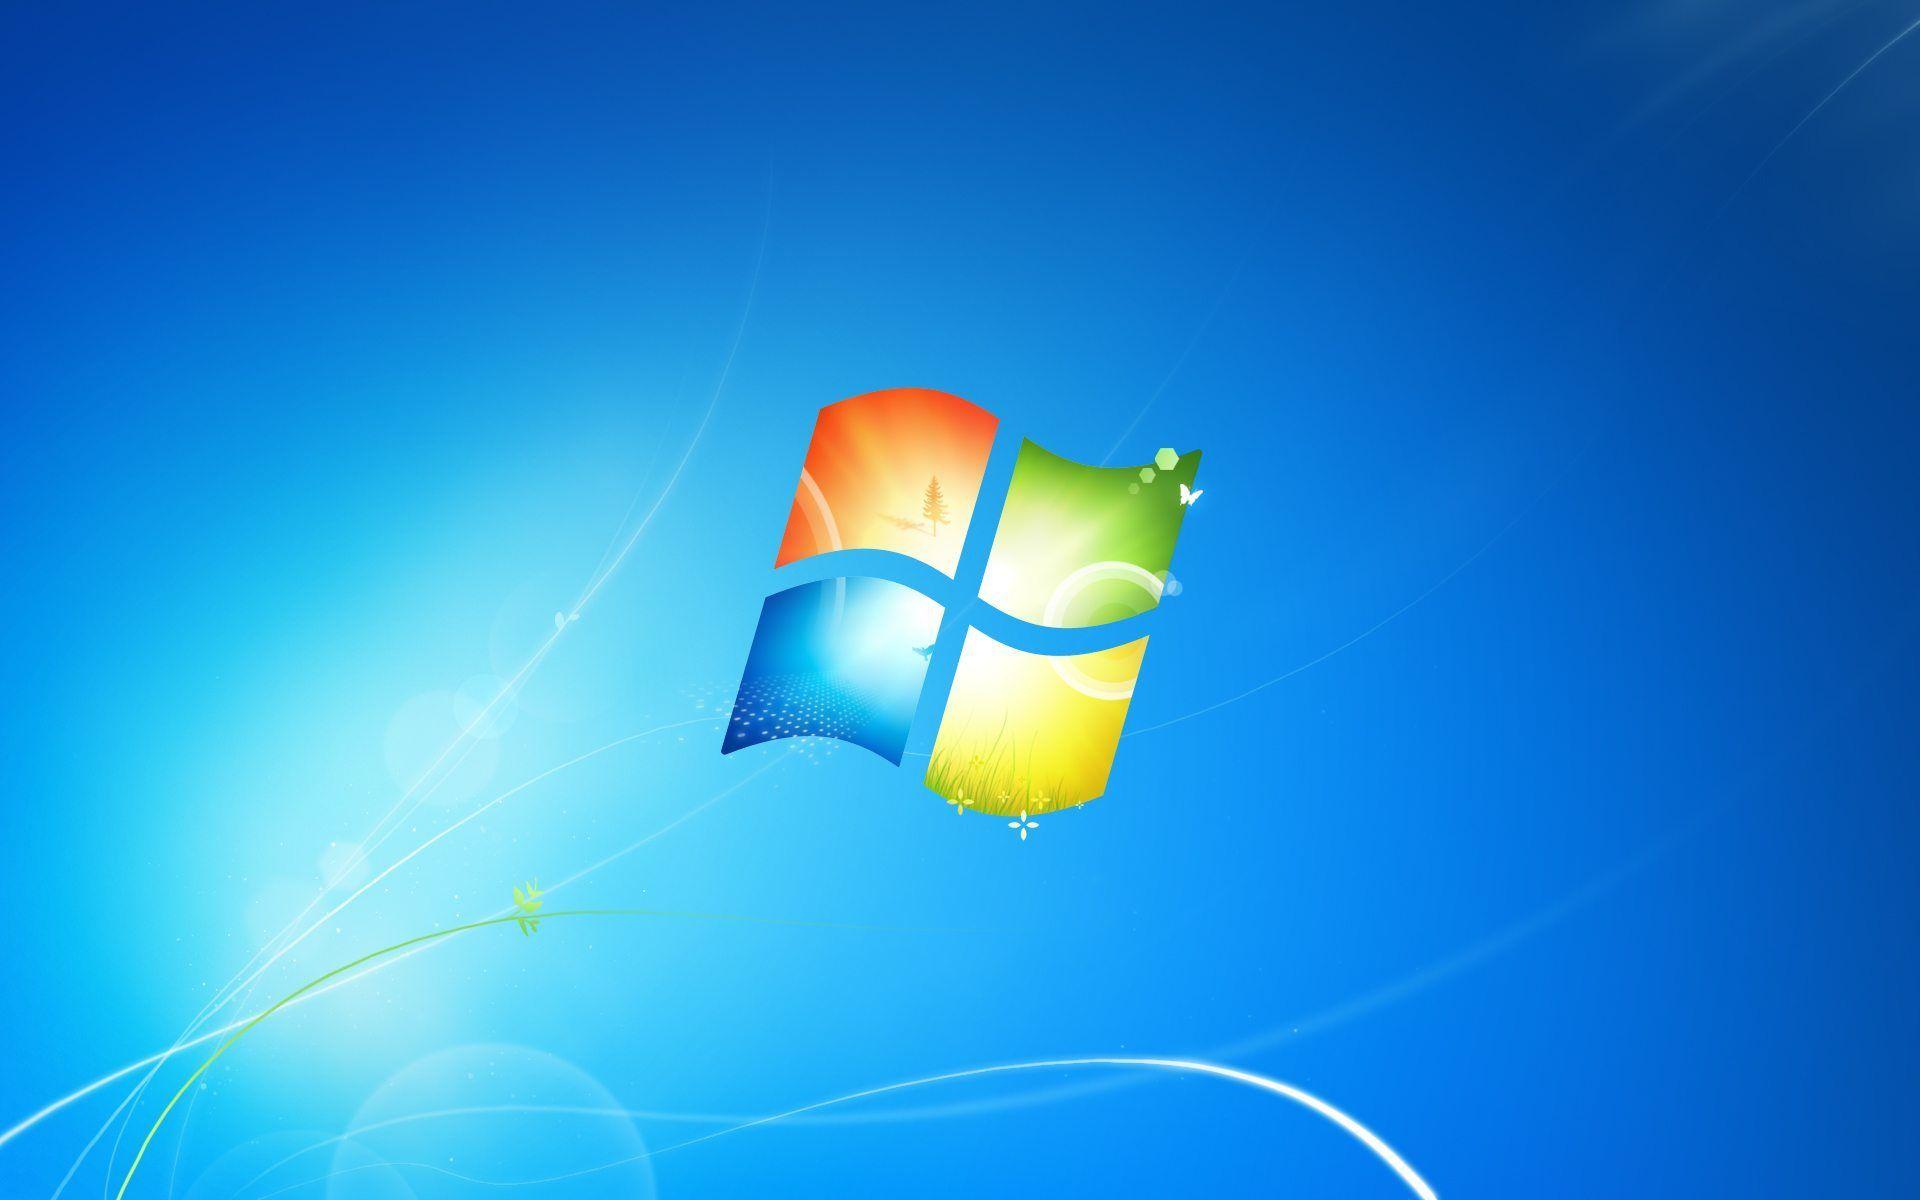 Sự thật đáng nể: Hình nền Windows 10 hoàn toàn được làm bằng thủ công